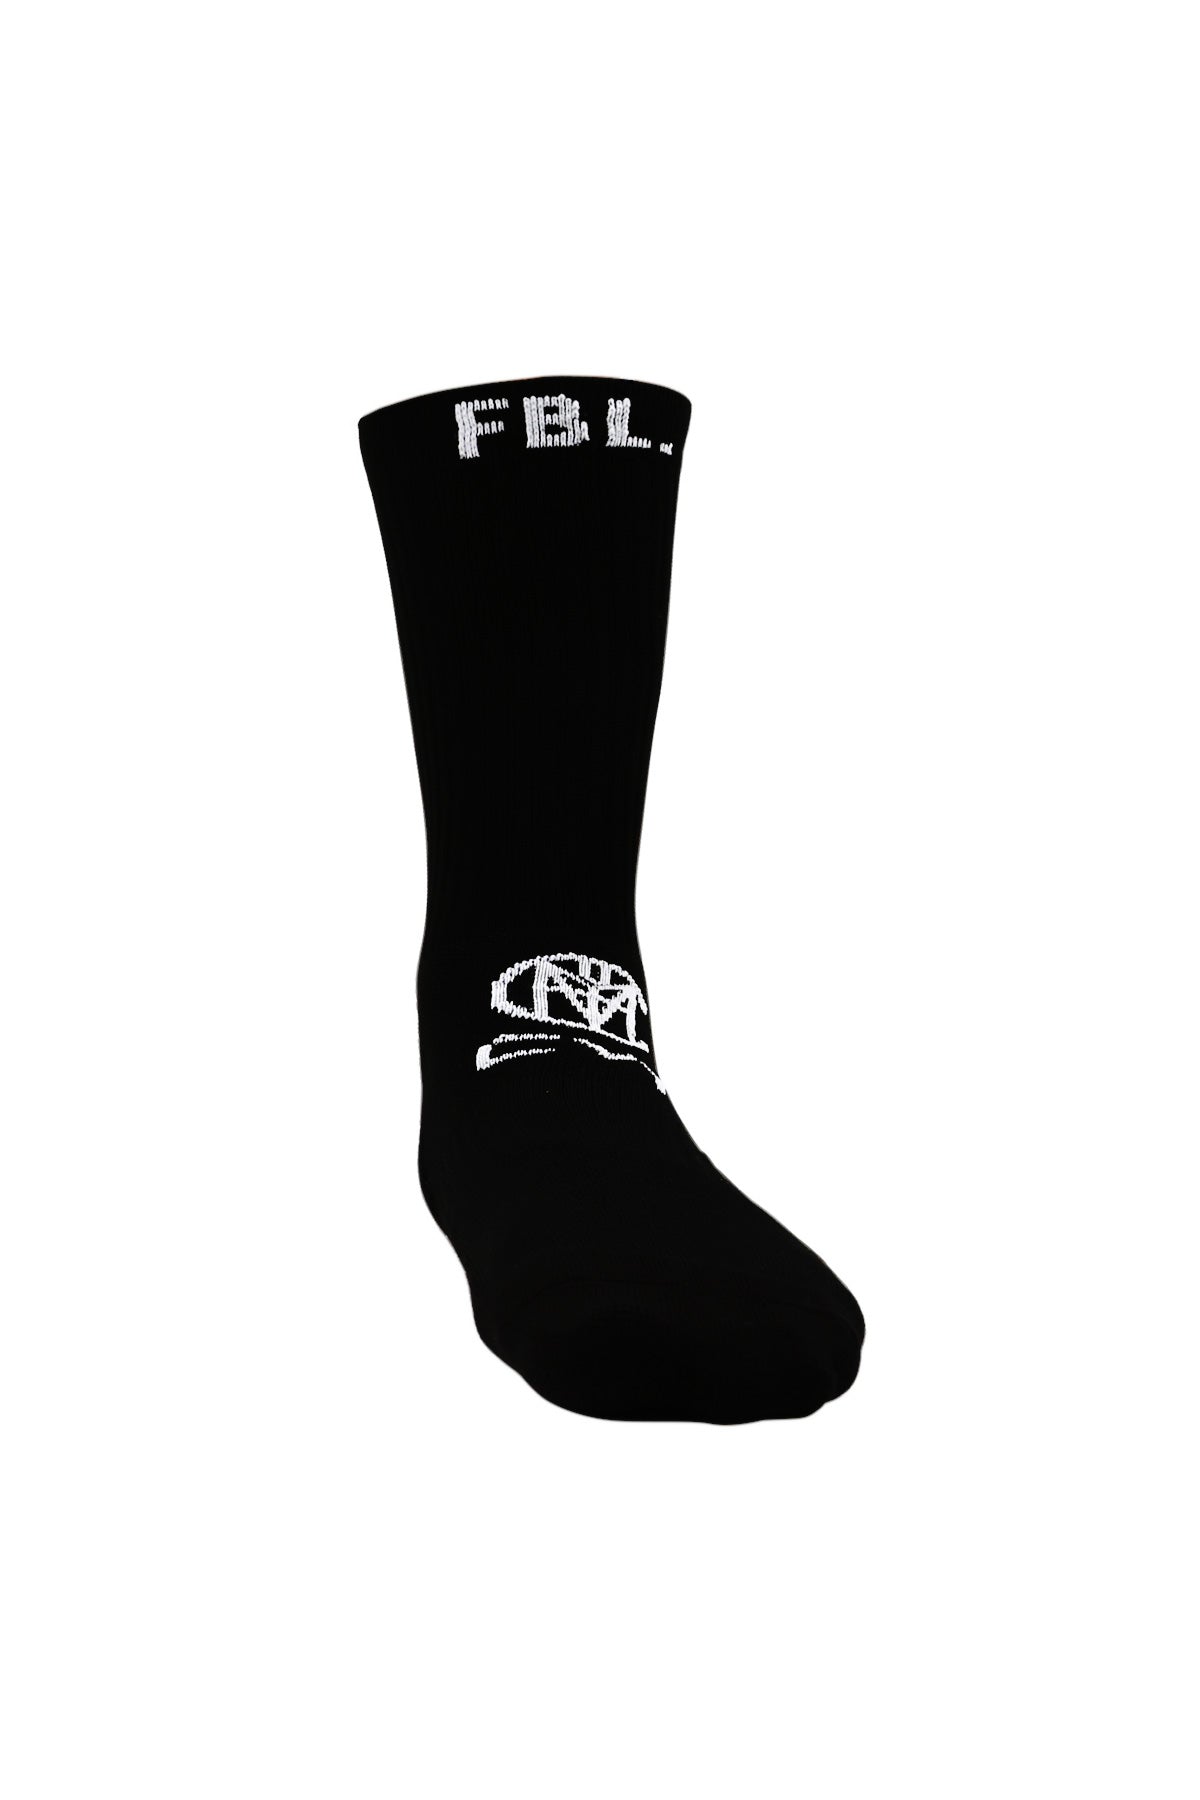 L04AYABY Black Socks Soccer Grip Socks Mens Athletic Crew Socks